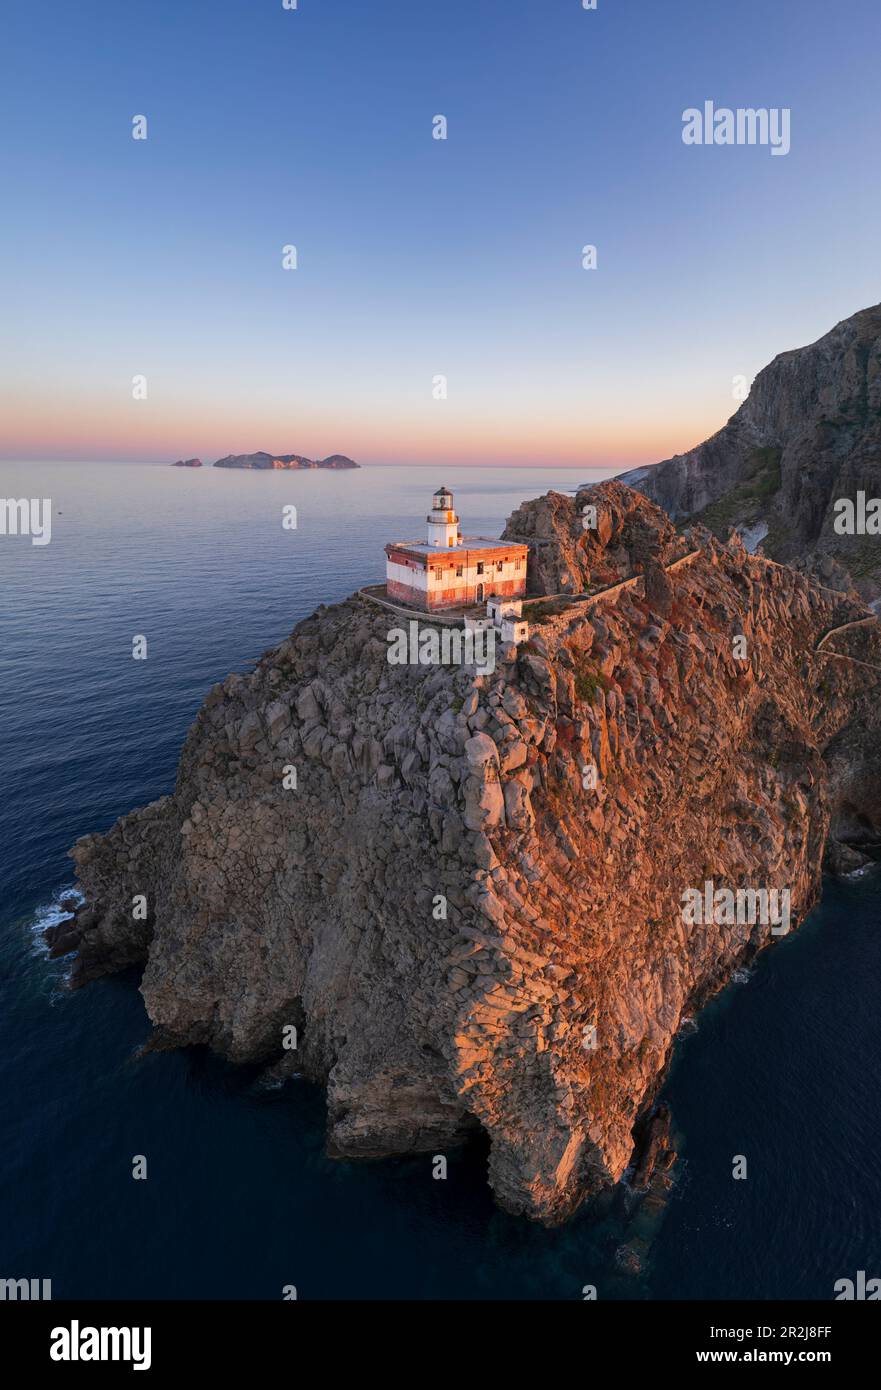 Panoramablick aus der Vogelperspektive auf den Leuchtturm der Insel Ponza, Punta della Guardia, der auf einer Klippe mit Blick auf das Meer in der Dämmerung steht, Ponza Island Stockfoto